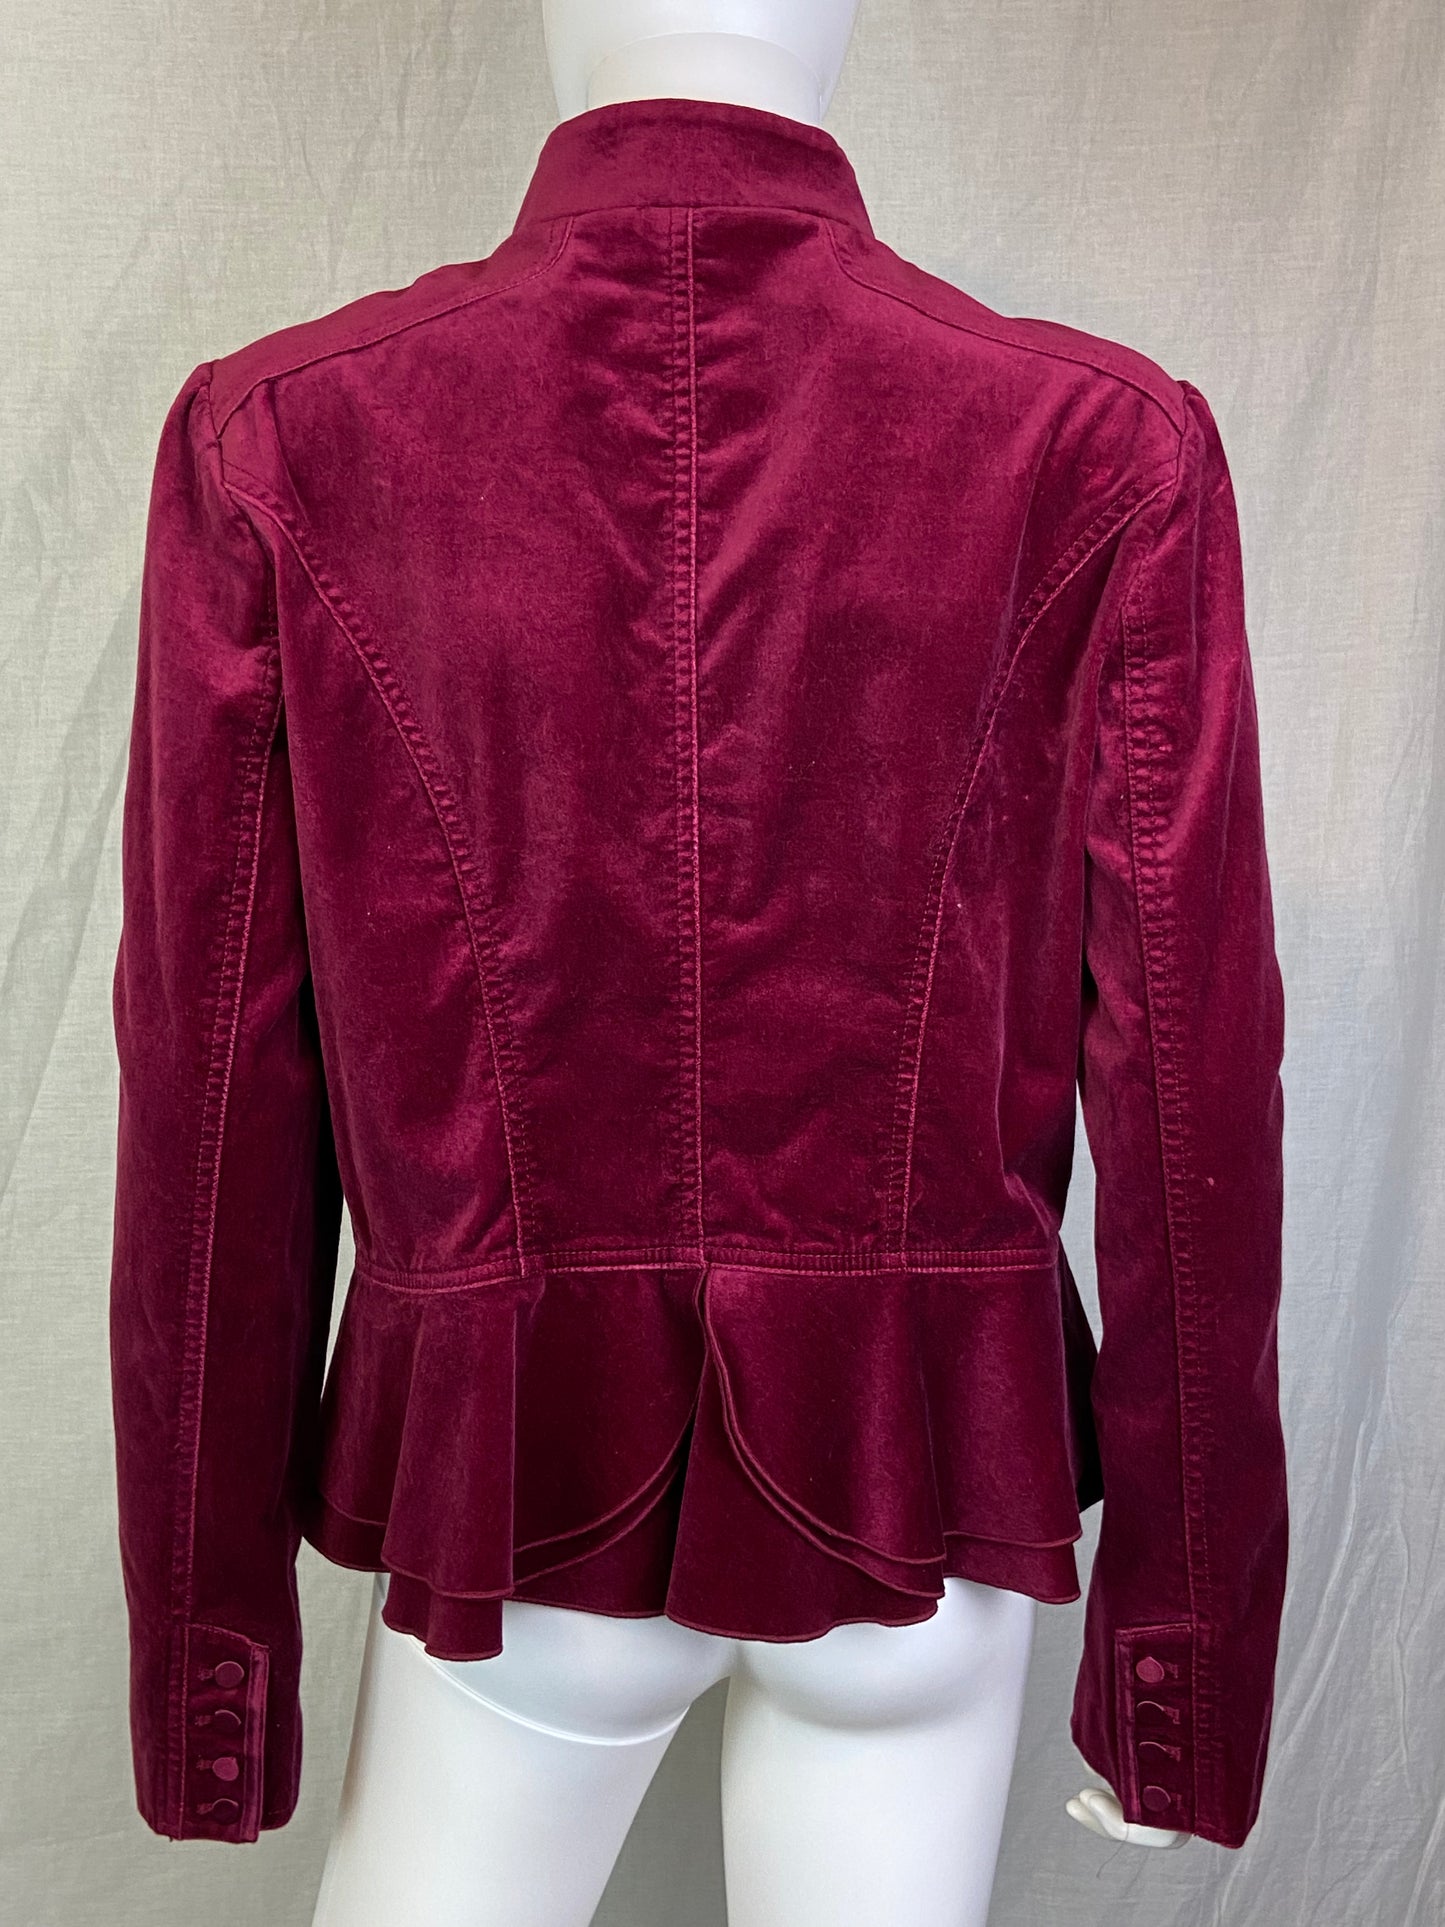 White House Black Market Burgundy Red Velvet Victorian Jacket